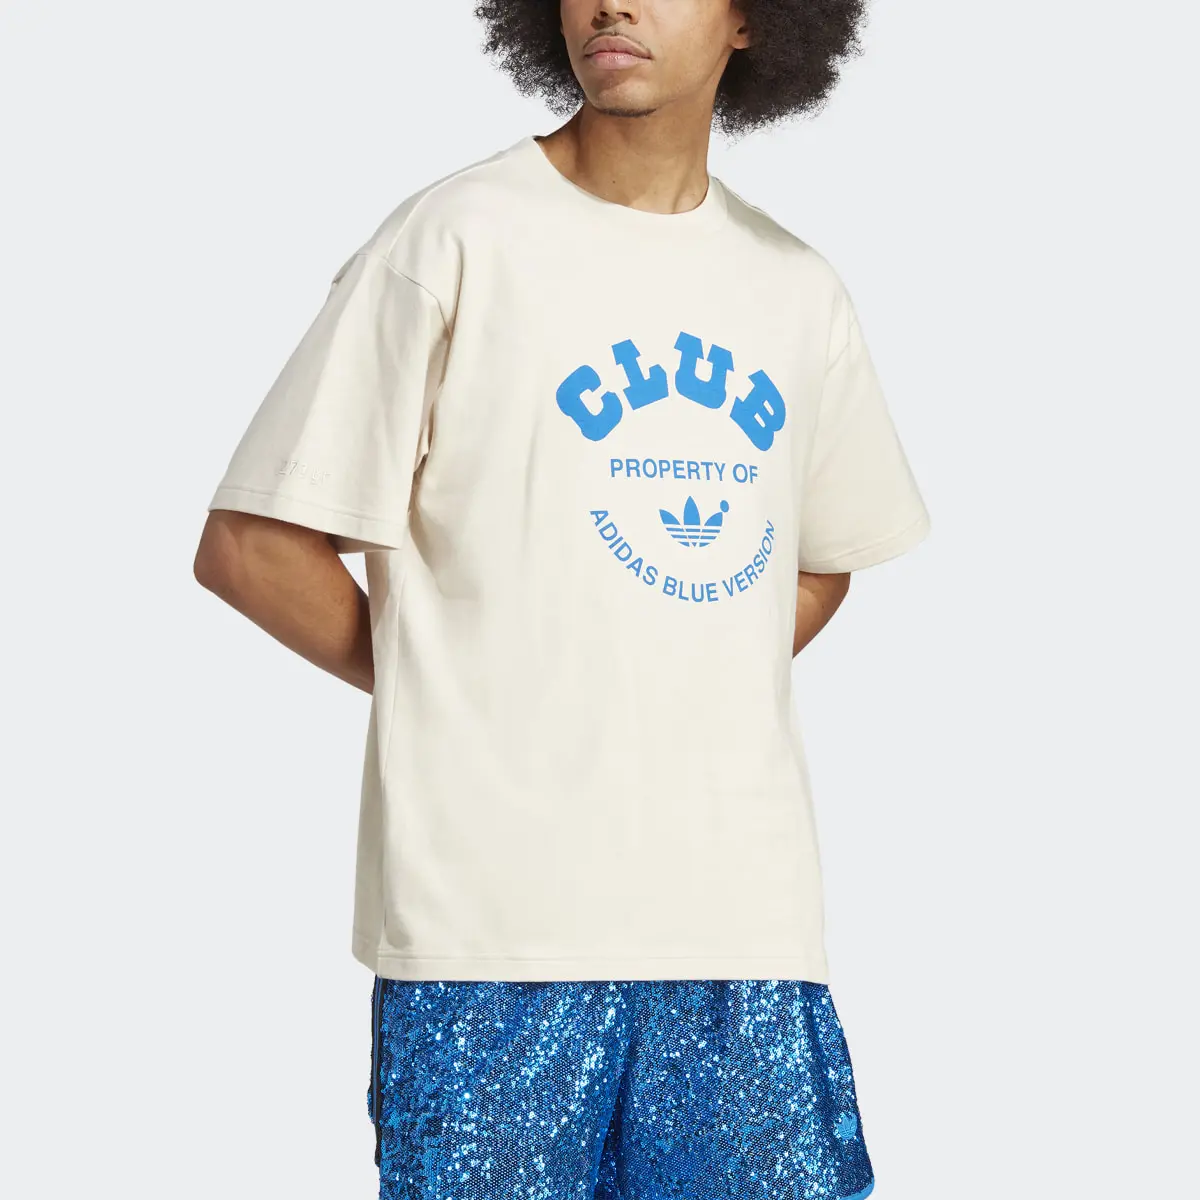 Adidas T-shirt Blue Version Club. 1